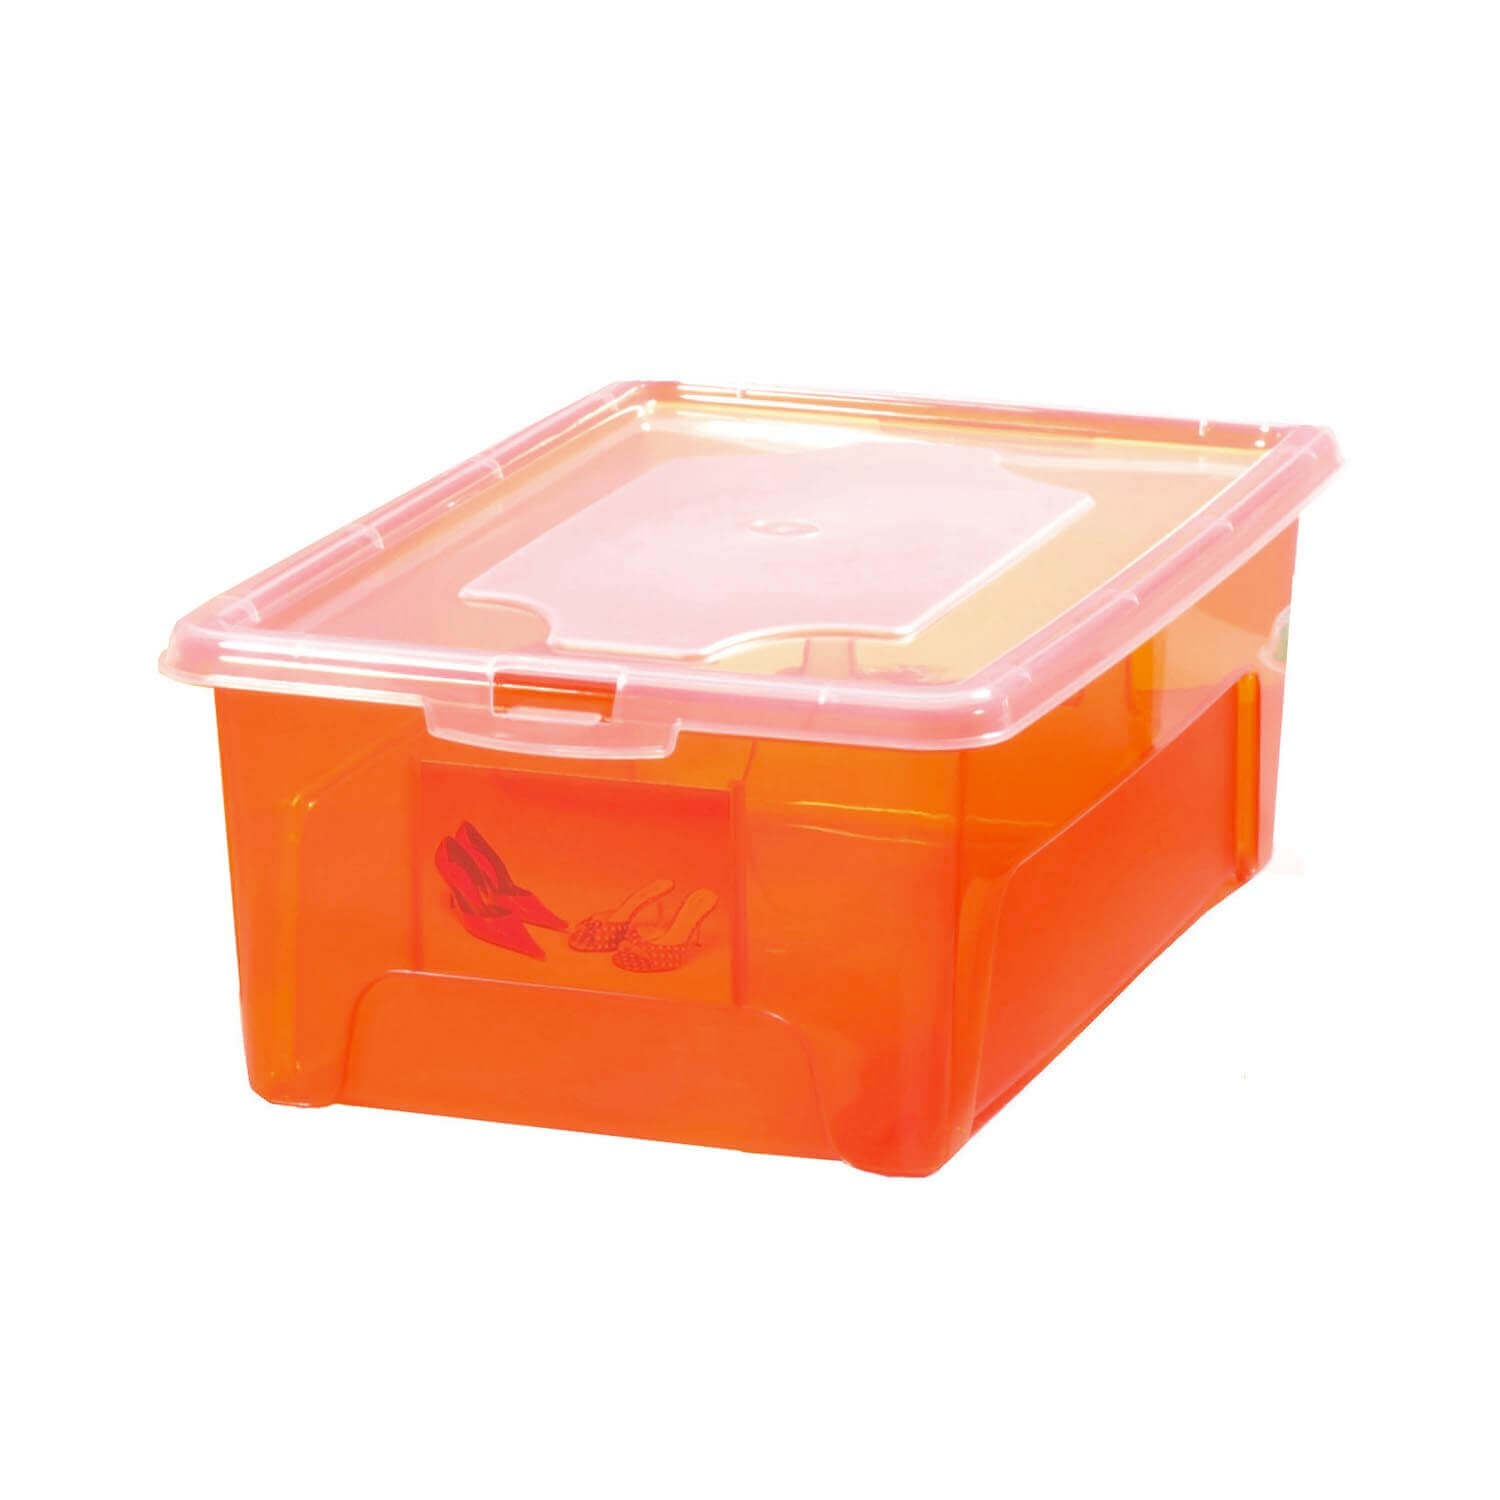 Aufbewahrungsbox "Easybox" 10 L Kunststoffbox, verschiedene Farben